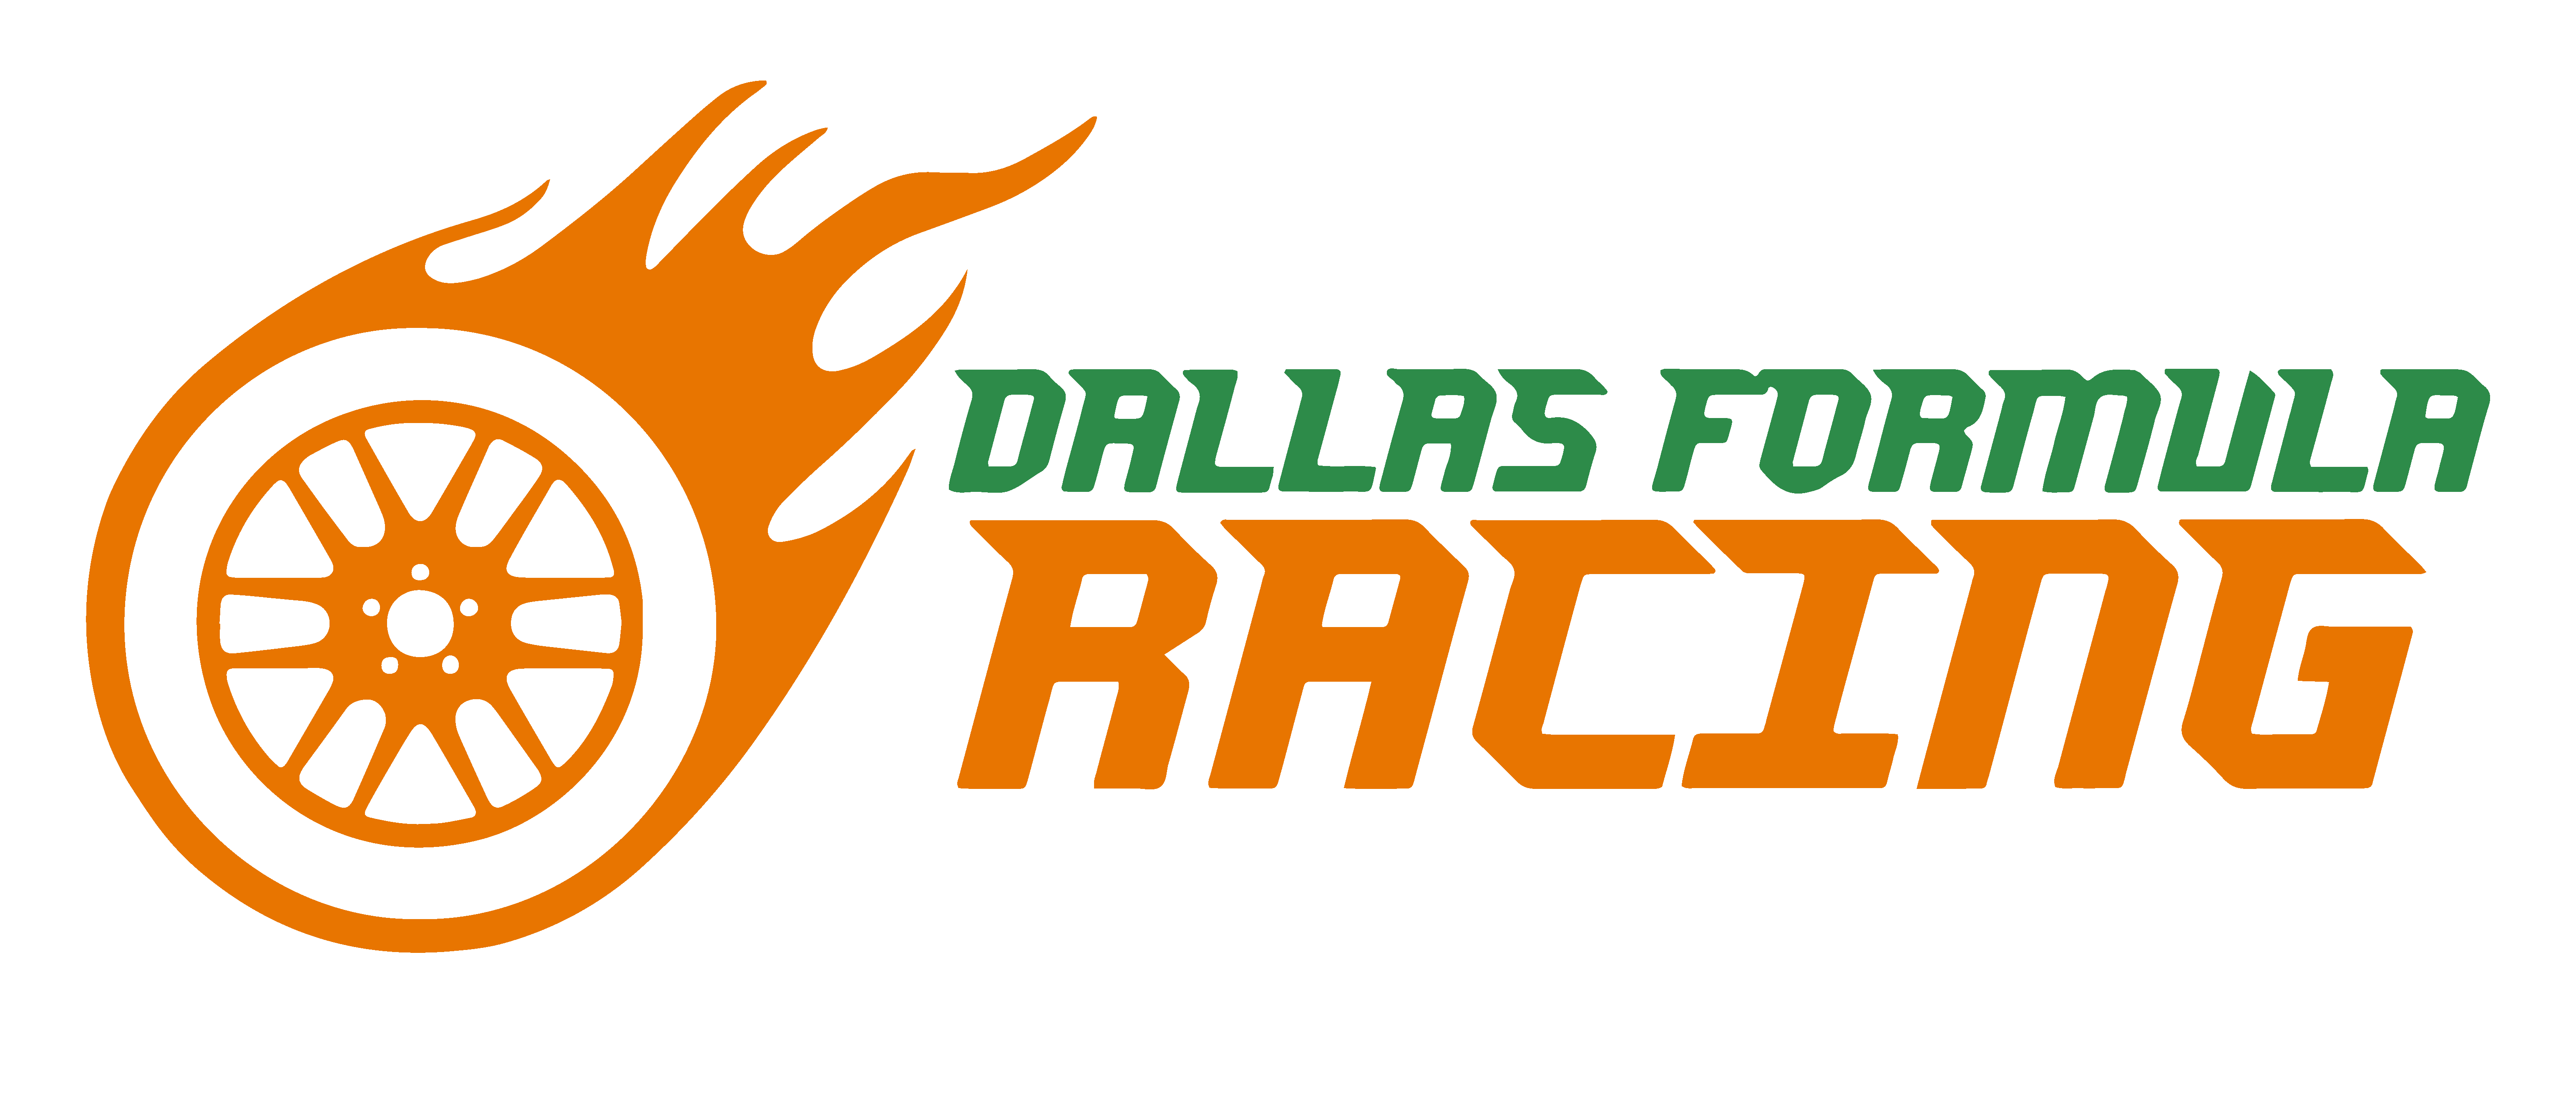 Racing Dallas FC-514283 - Premier